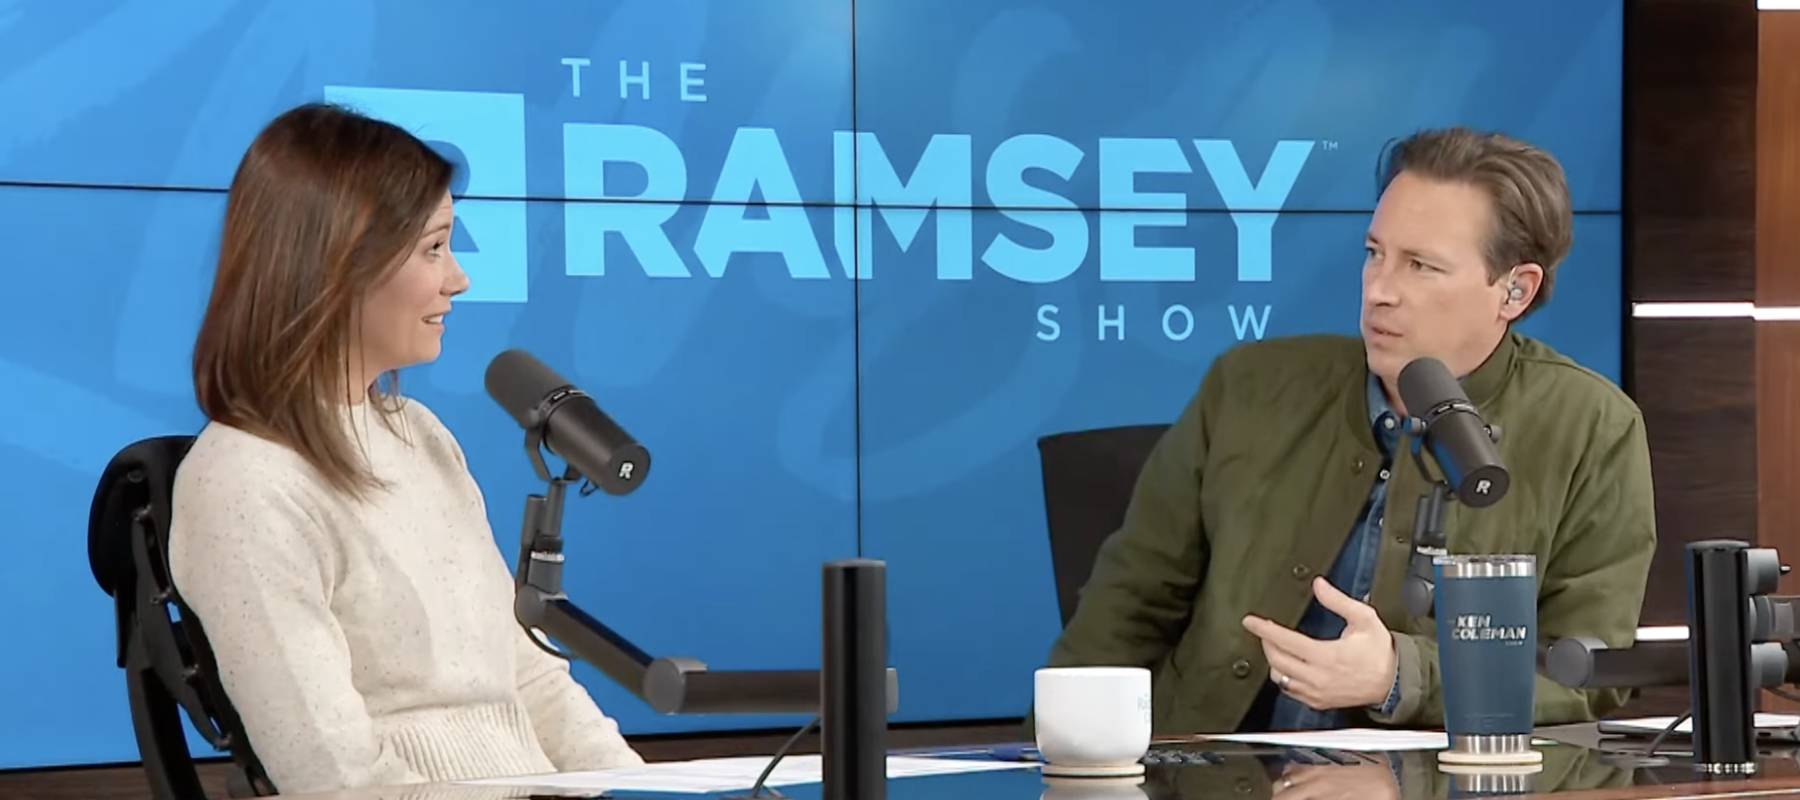 The Ramsey Show co-hosts Rachel Cruze and Ken Coleman